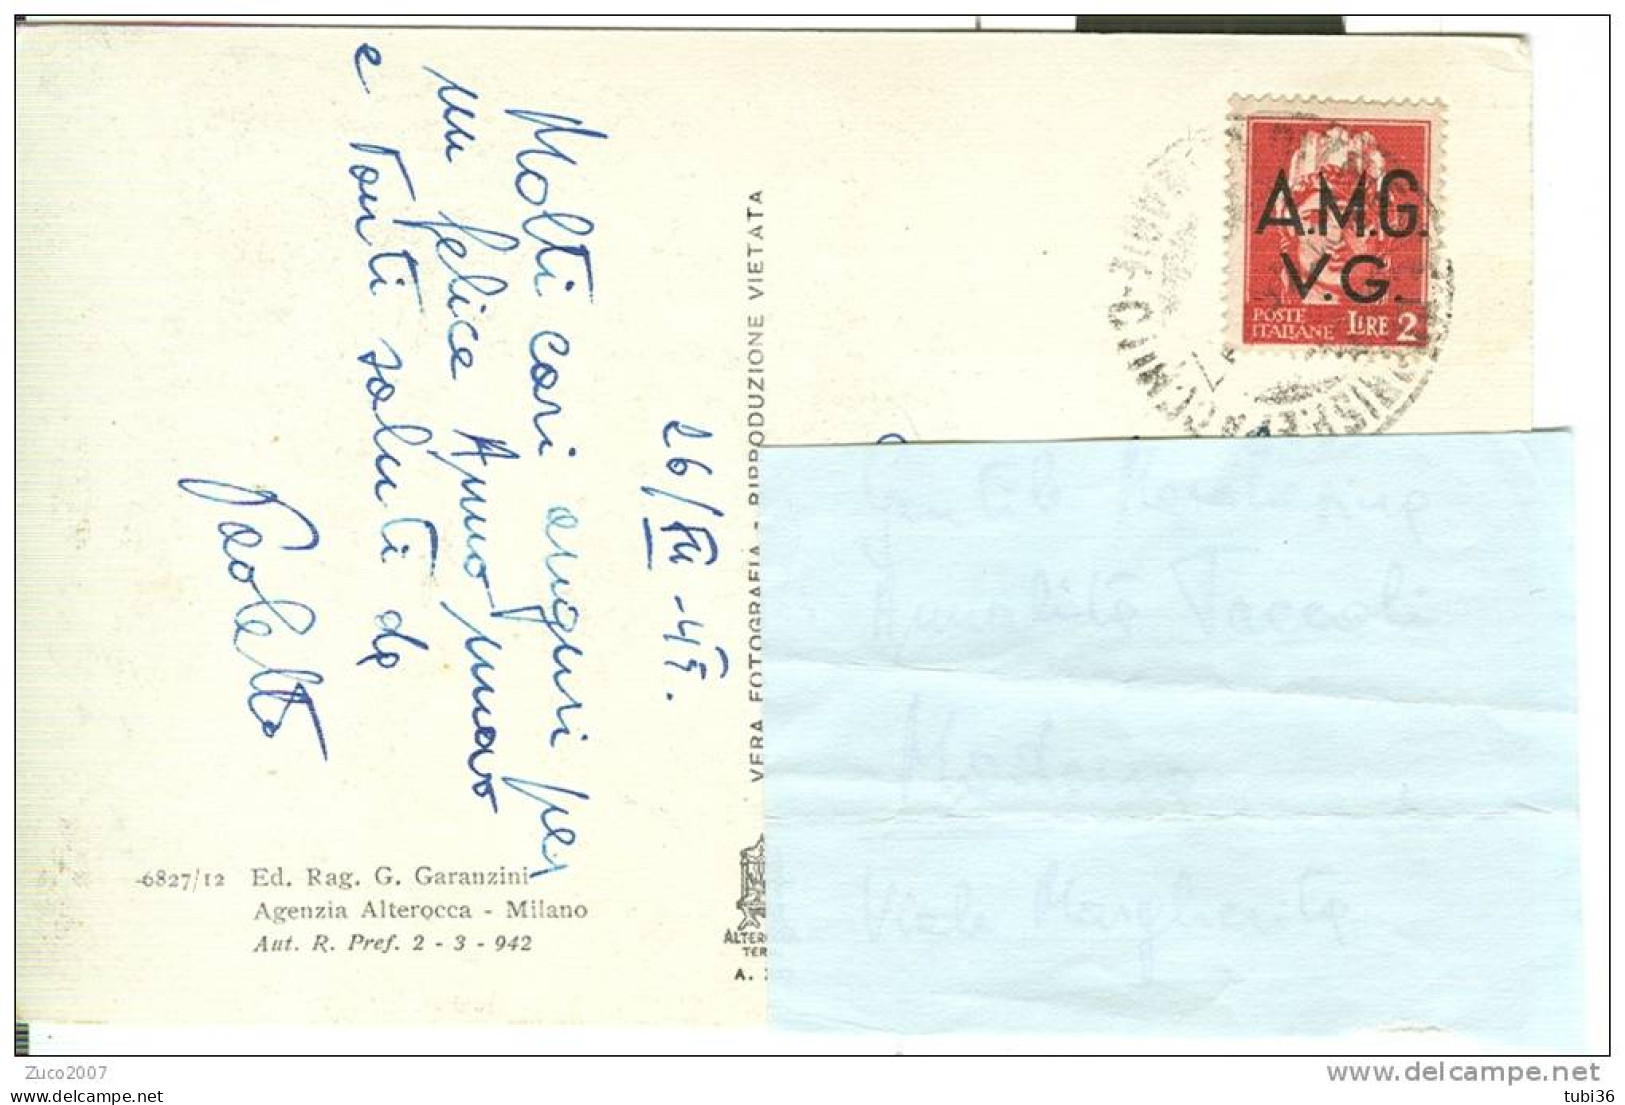 STORIA POSTALE - IMPERIALE £. 2 - AMG  VG - ISOLATO IN TARIFFA SU CARTOLINA VIAGGIATA  26/9/1945 -  GG. 4 - Poststempel